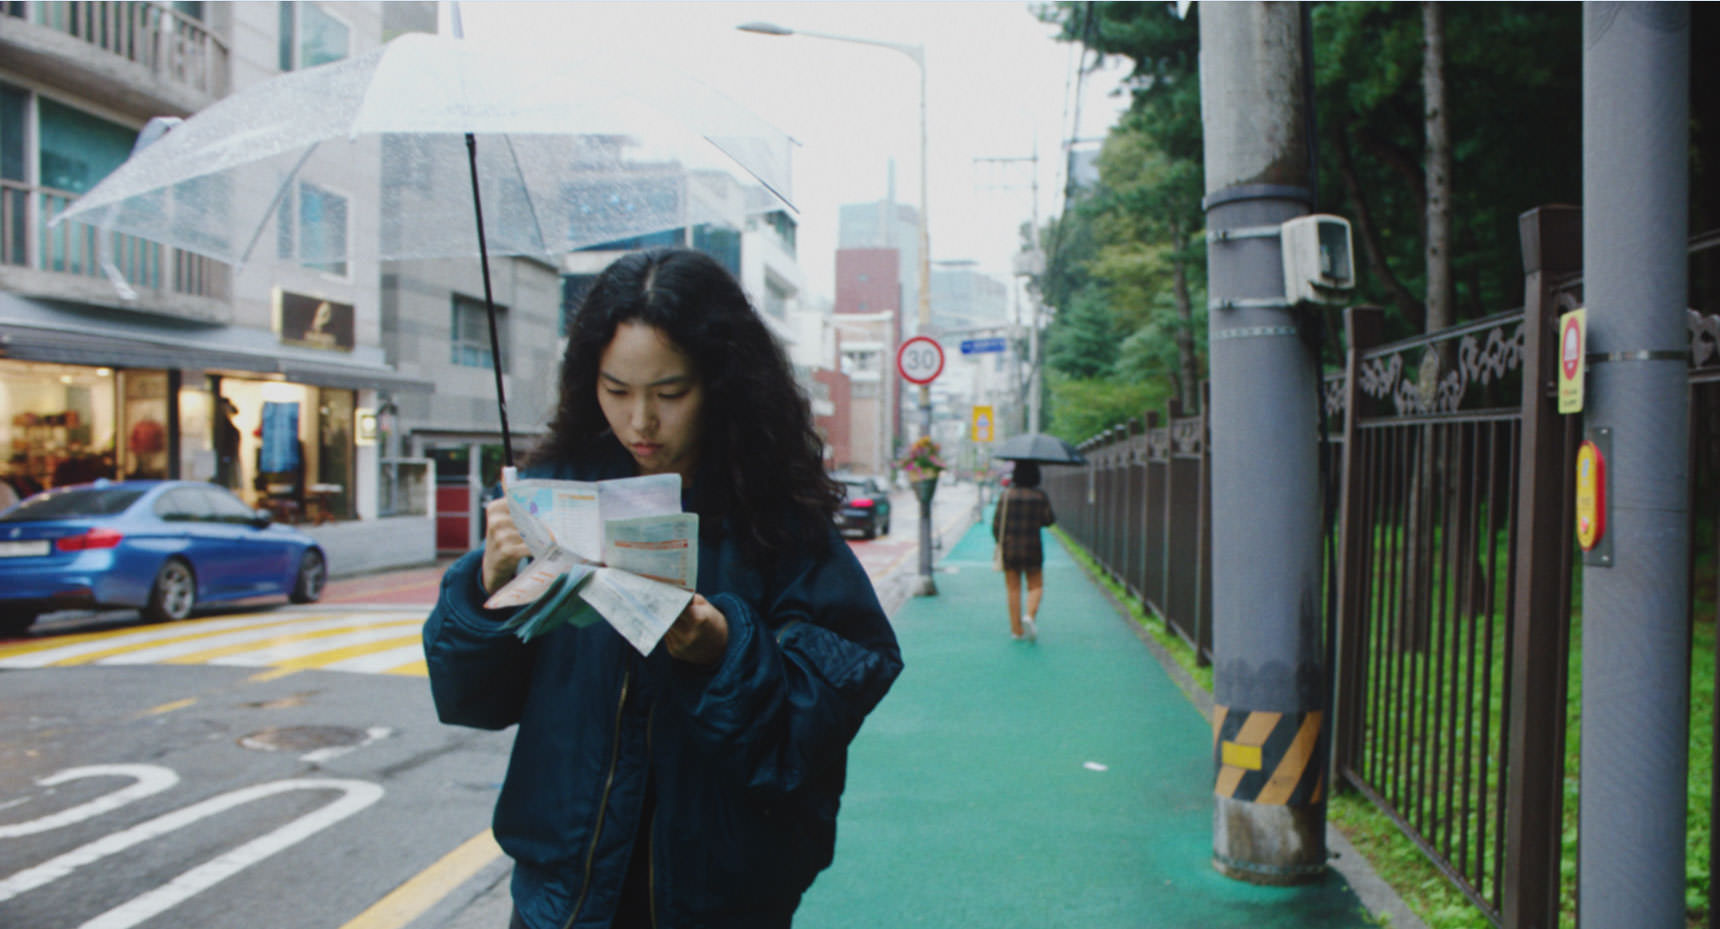 پارک جی-مین در حال مسیریابی با یک نقشه‌ی کاغذی در خیابانی در سئول با چتری در دست در نمایی از فیلم بازگشت به سئول به کارگردانی دیوی چو